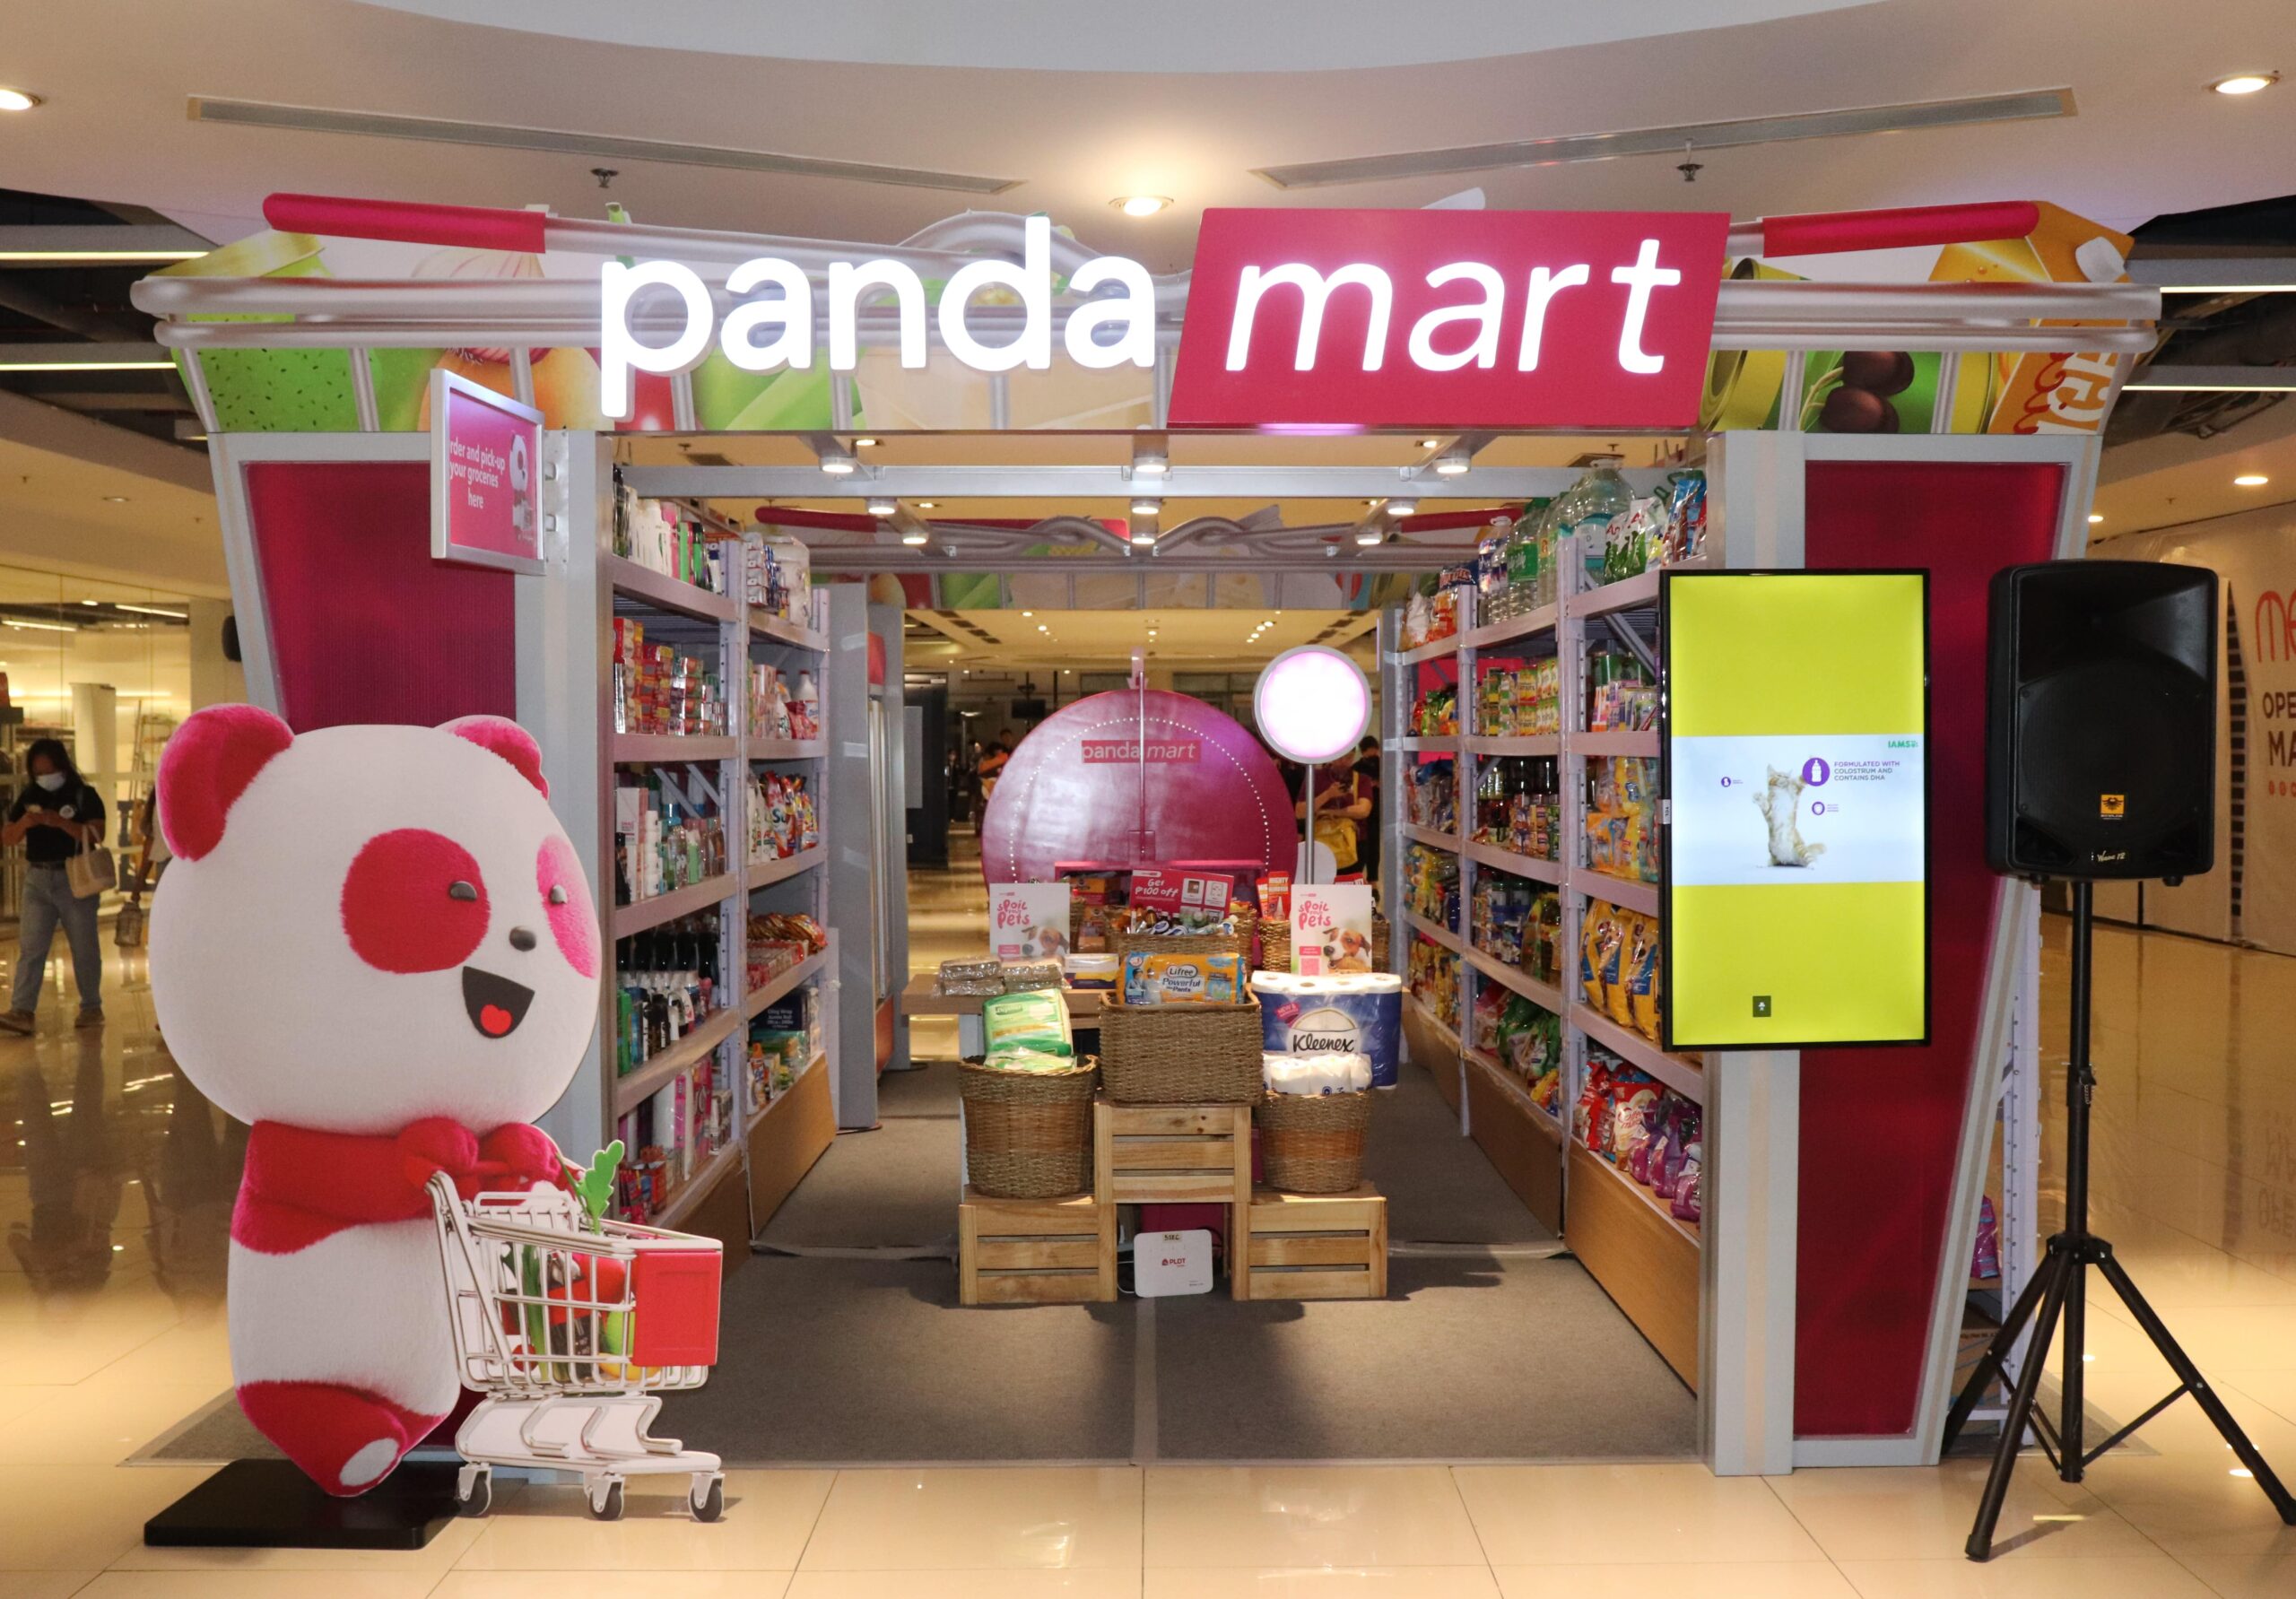 pandamart foodpanda pop up store